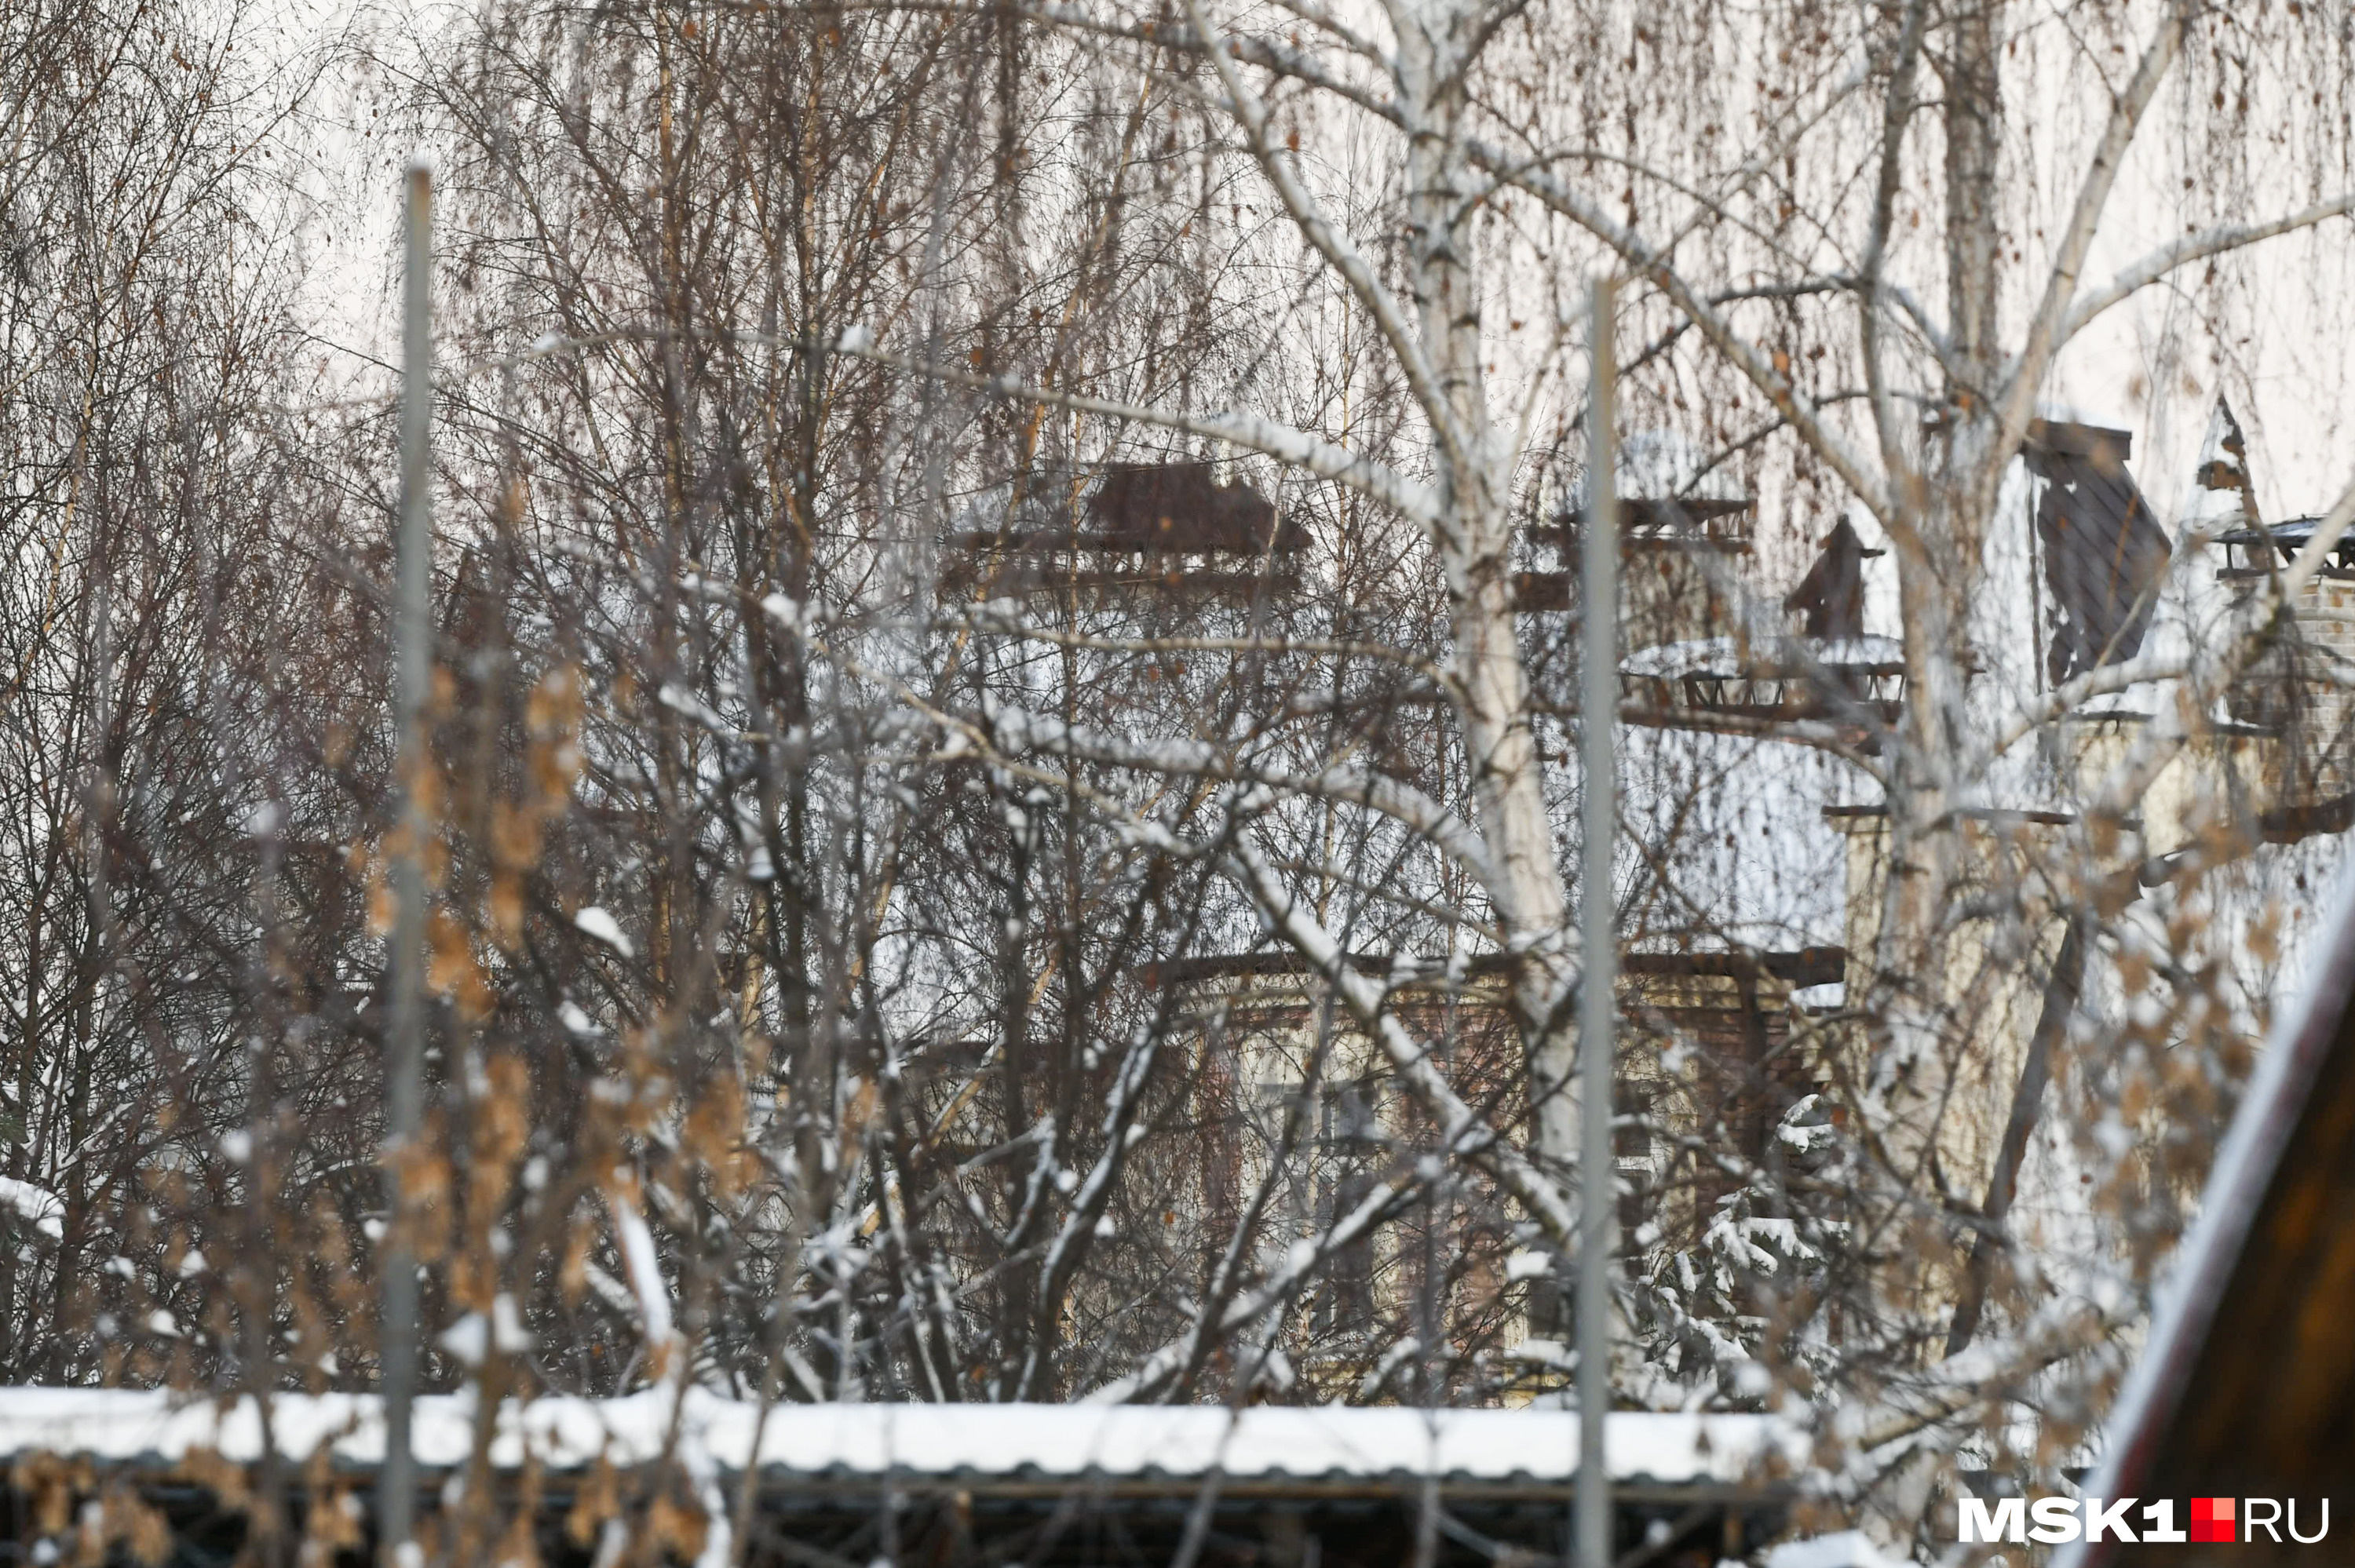 Разглядеть дом Харламова и Асмус поближе нельзя: поселок огорожен высоким забором, а внутрь не пускают